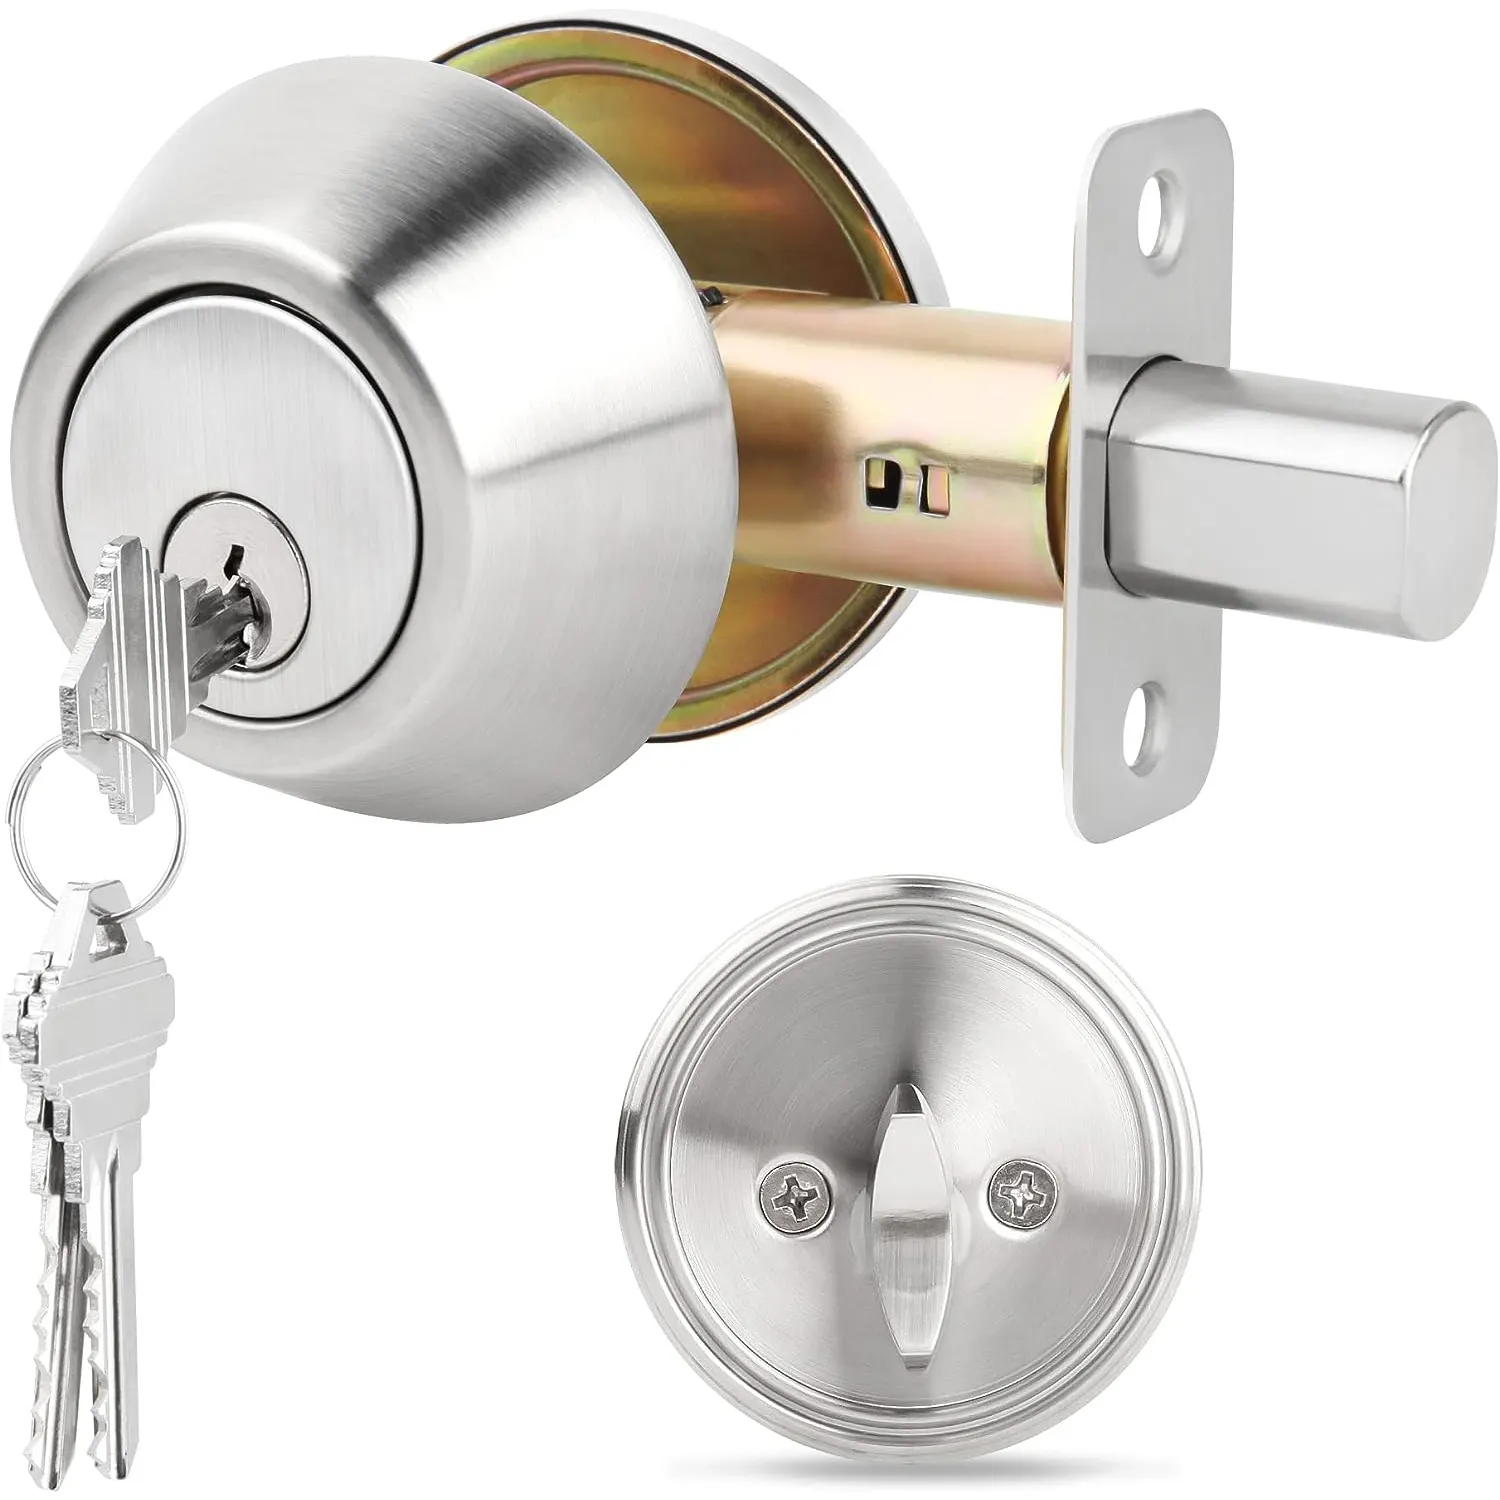 กุญแจล็อกล็อกประตูสำหรับห้องนอนห้องน้ำ, กุญแจล็อกล็อกล็อกล็อกล็อกล็อกประตูแบบถังเดียวทำจากสเตนเลส